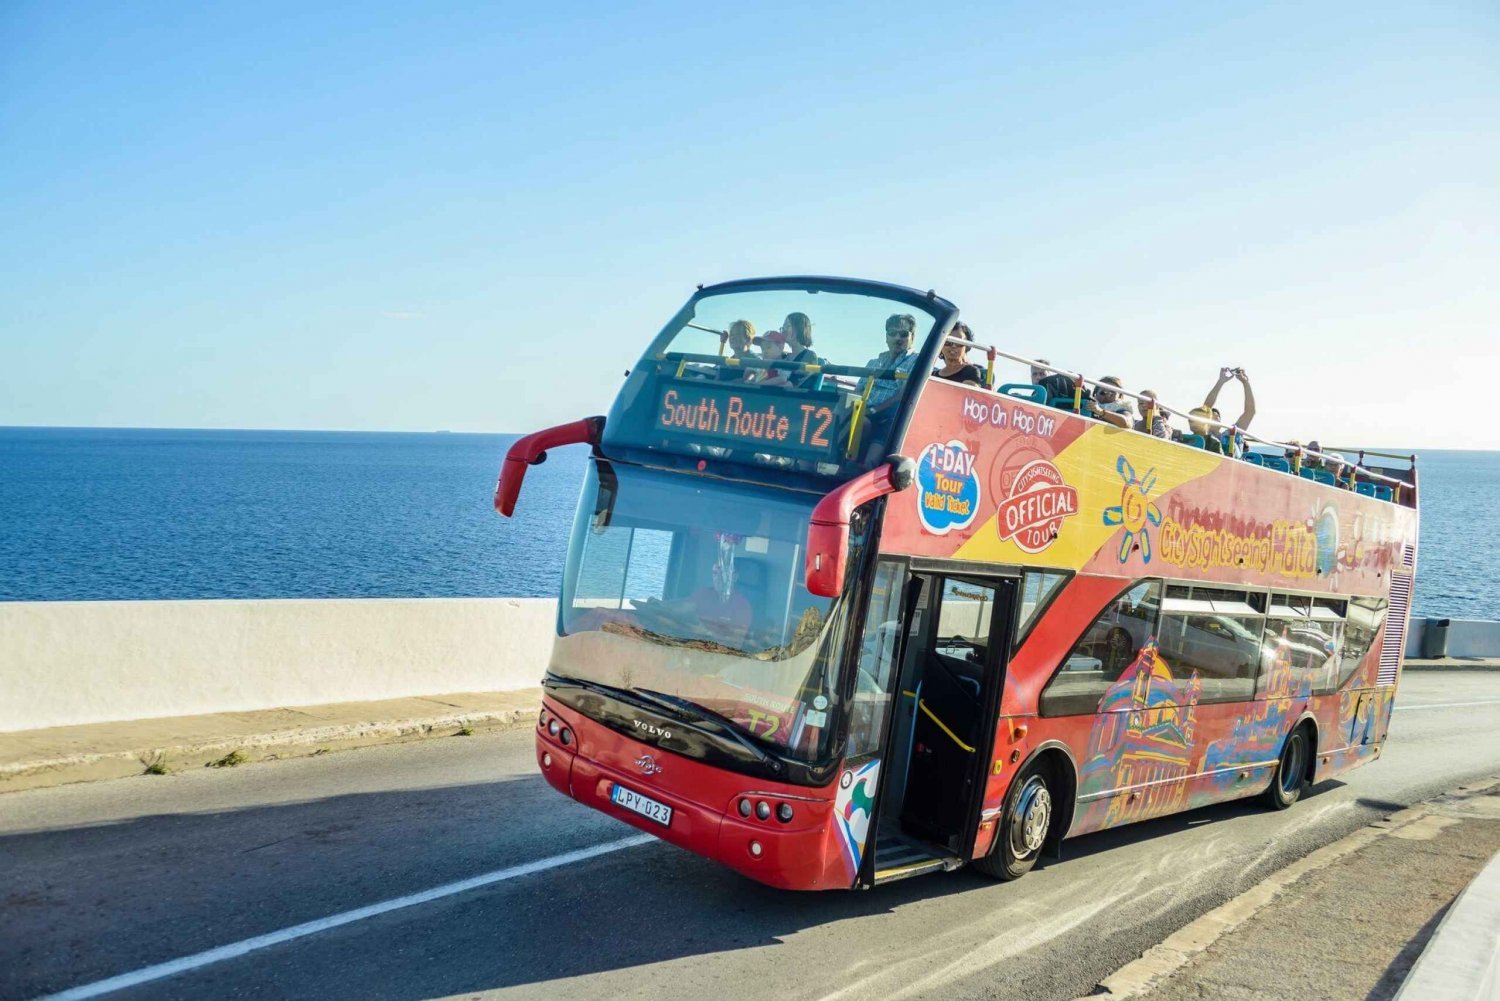 Malta: City Sightseeing HOHO Bus Tour & Optional Boat Tour